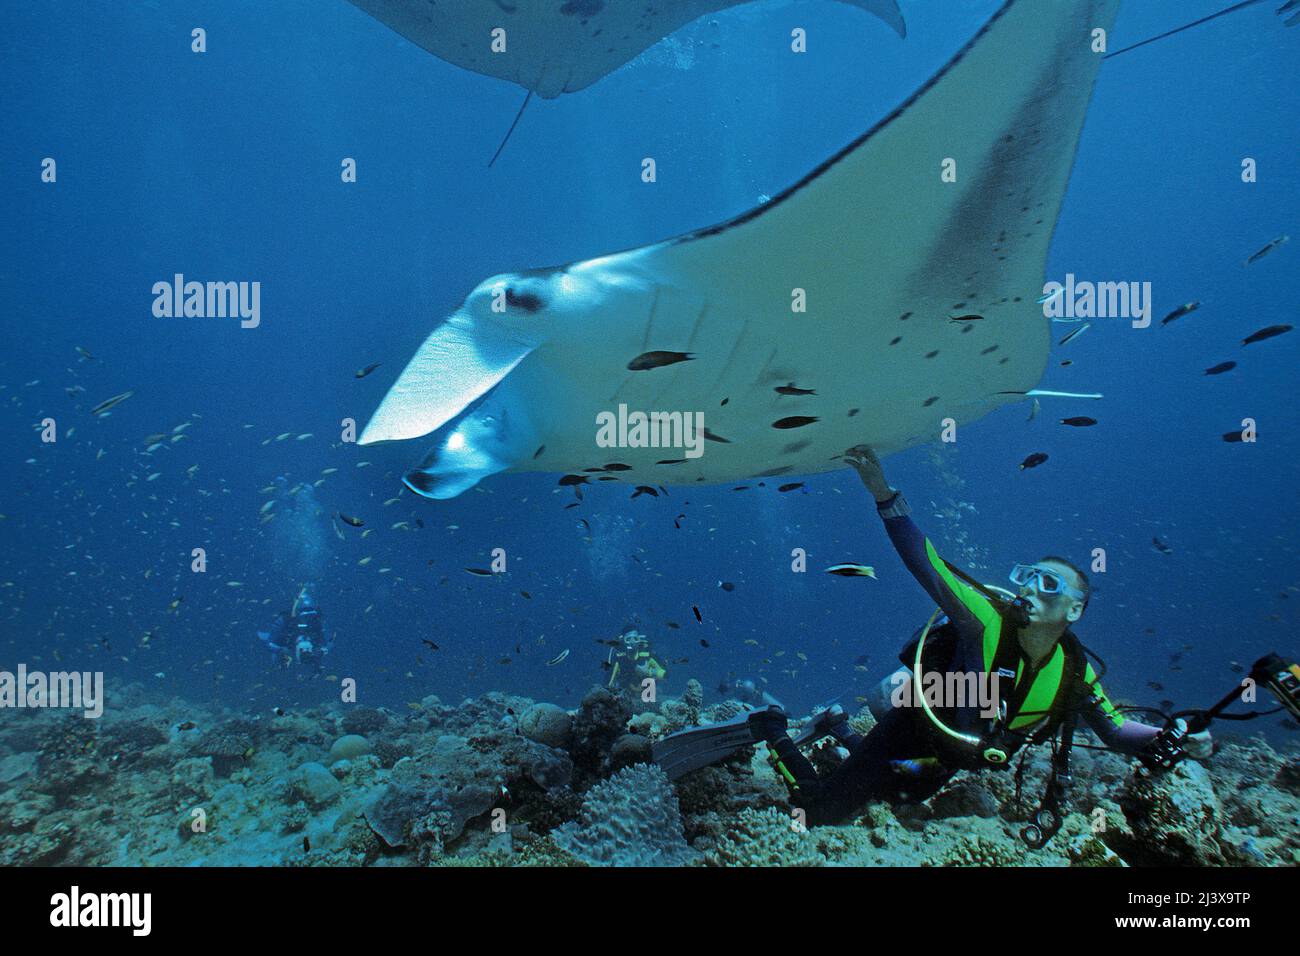 Plongeur touchant un rayon manta océanique géant ou un rayon manta géant (Manta birostris), Ari Atoll, Maldives, Océan Indien, Asie Banque D'Images